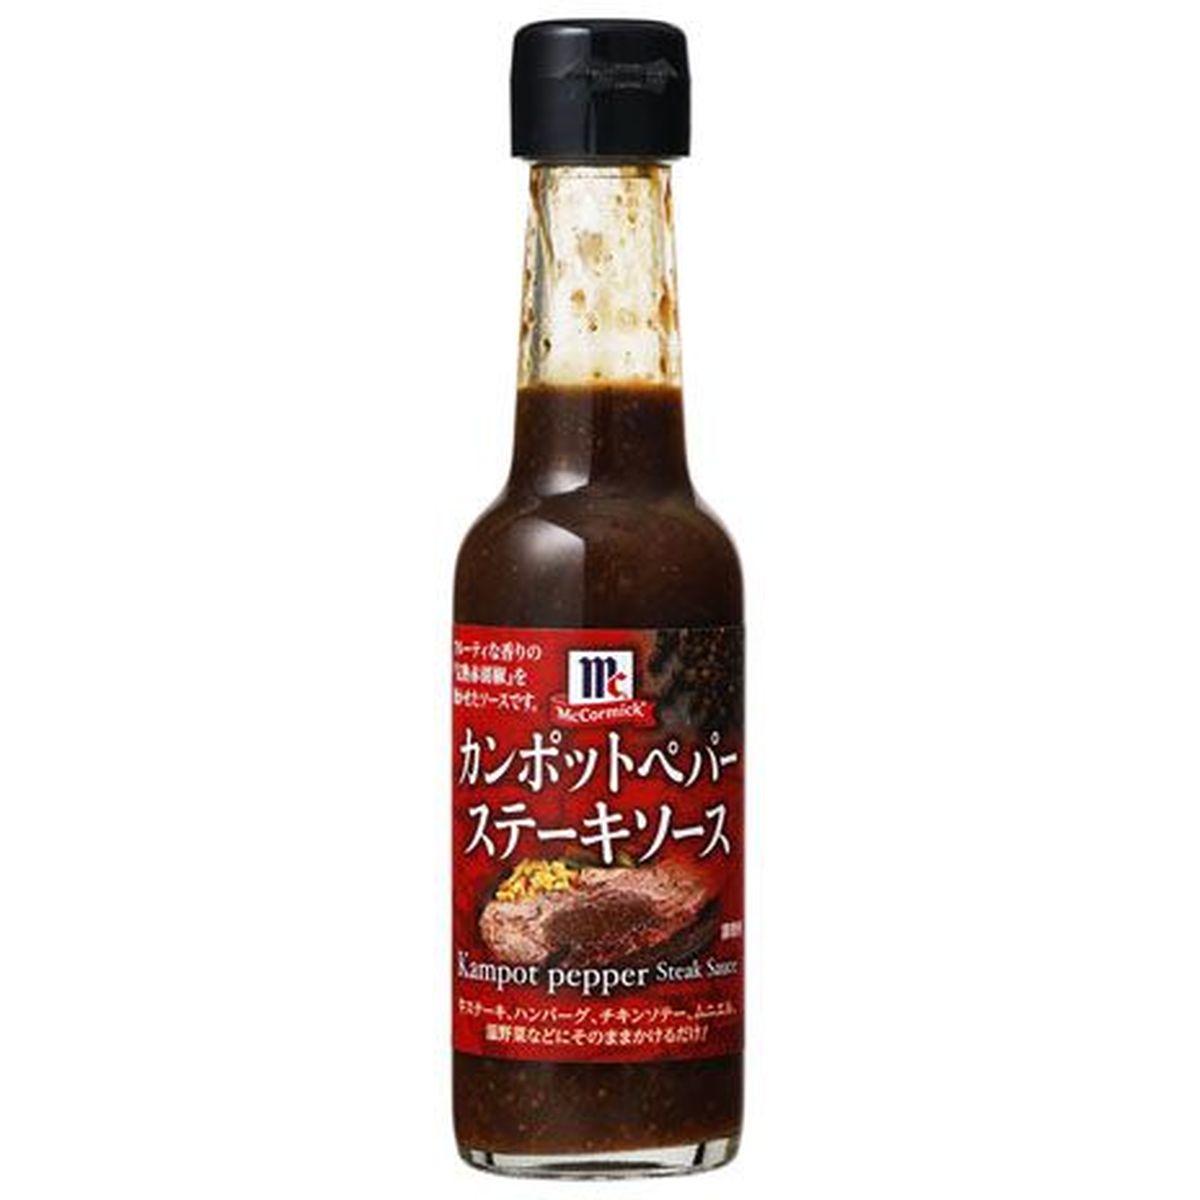 【6個入リ】ユウキ食品 MC カンポットペパーステーキソース 170g